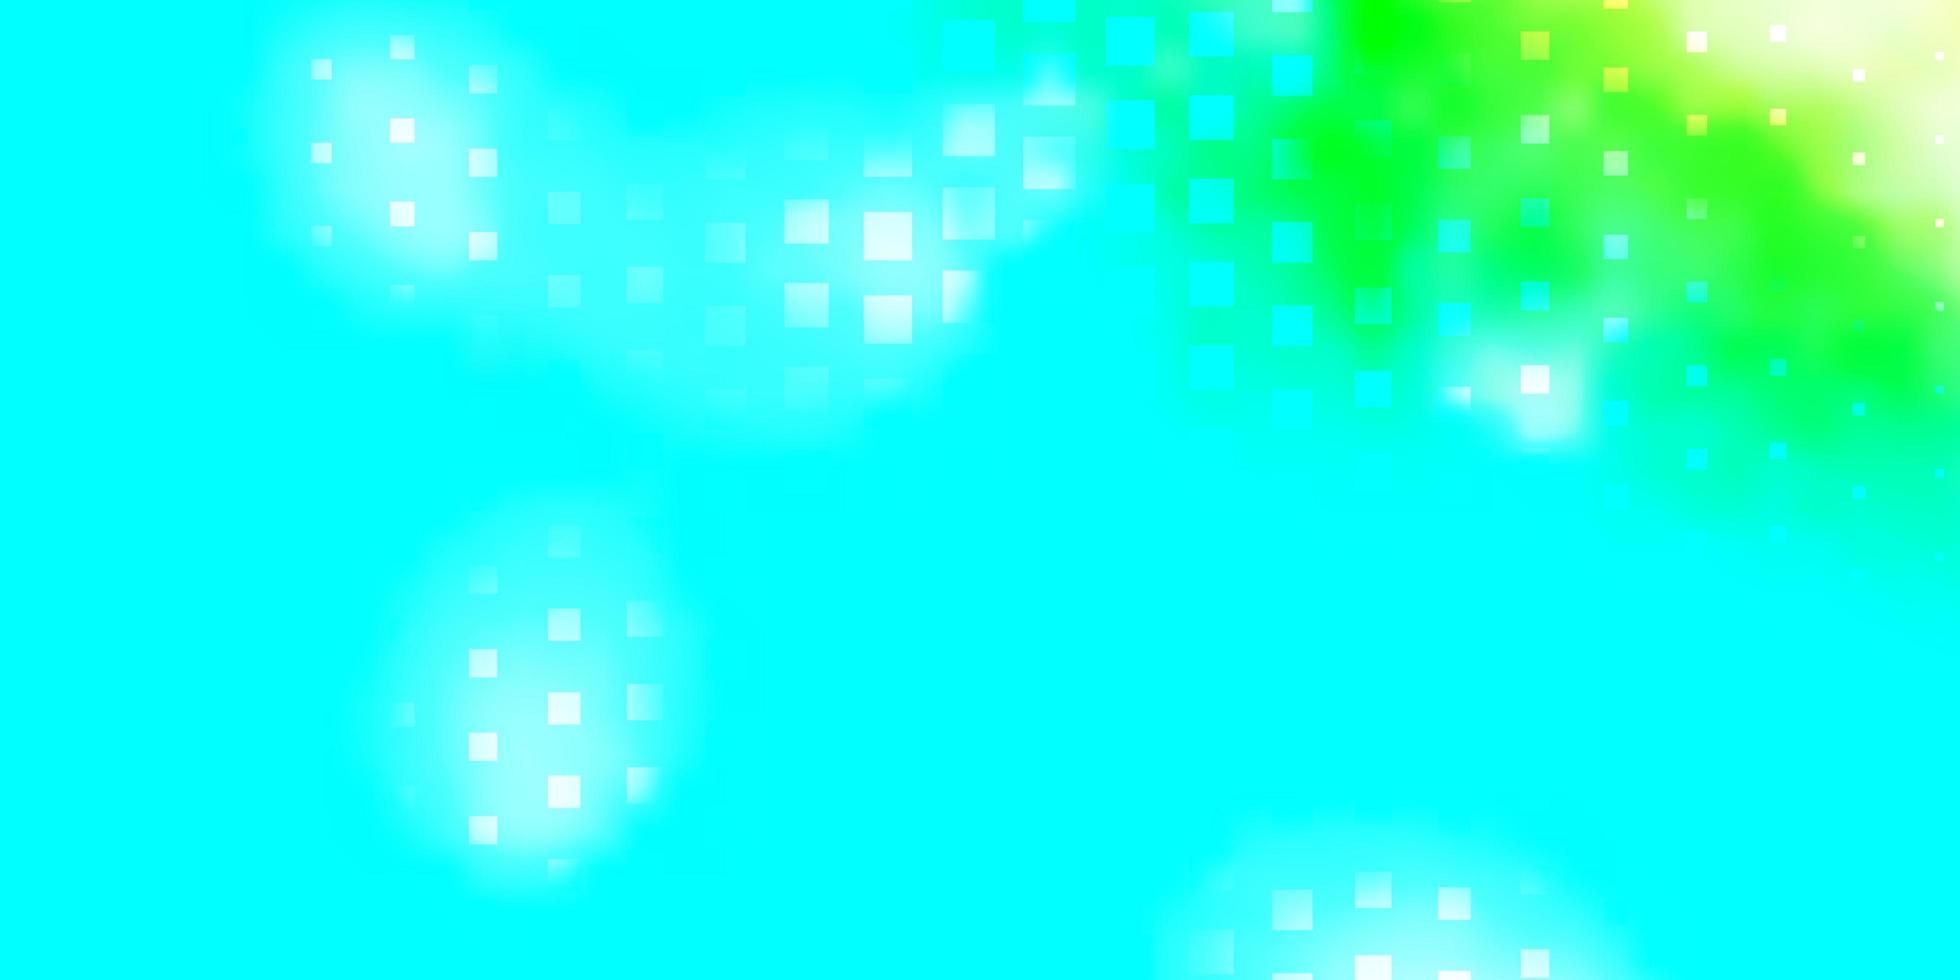 ljusblå, grön vektorbakgrund med rektanglar. vektor